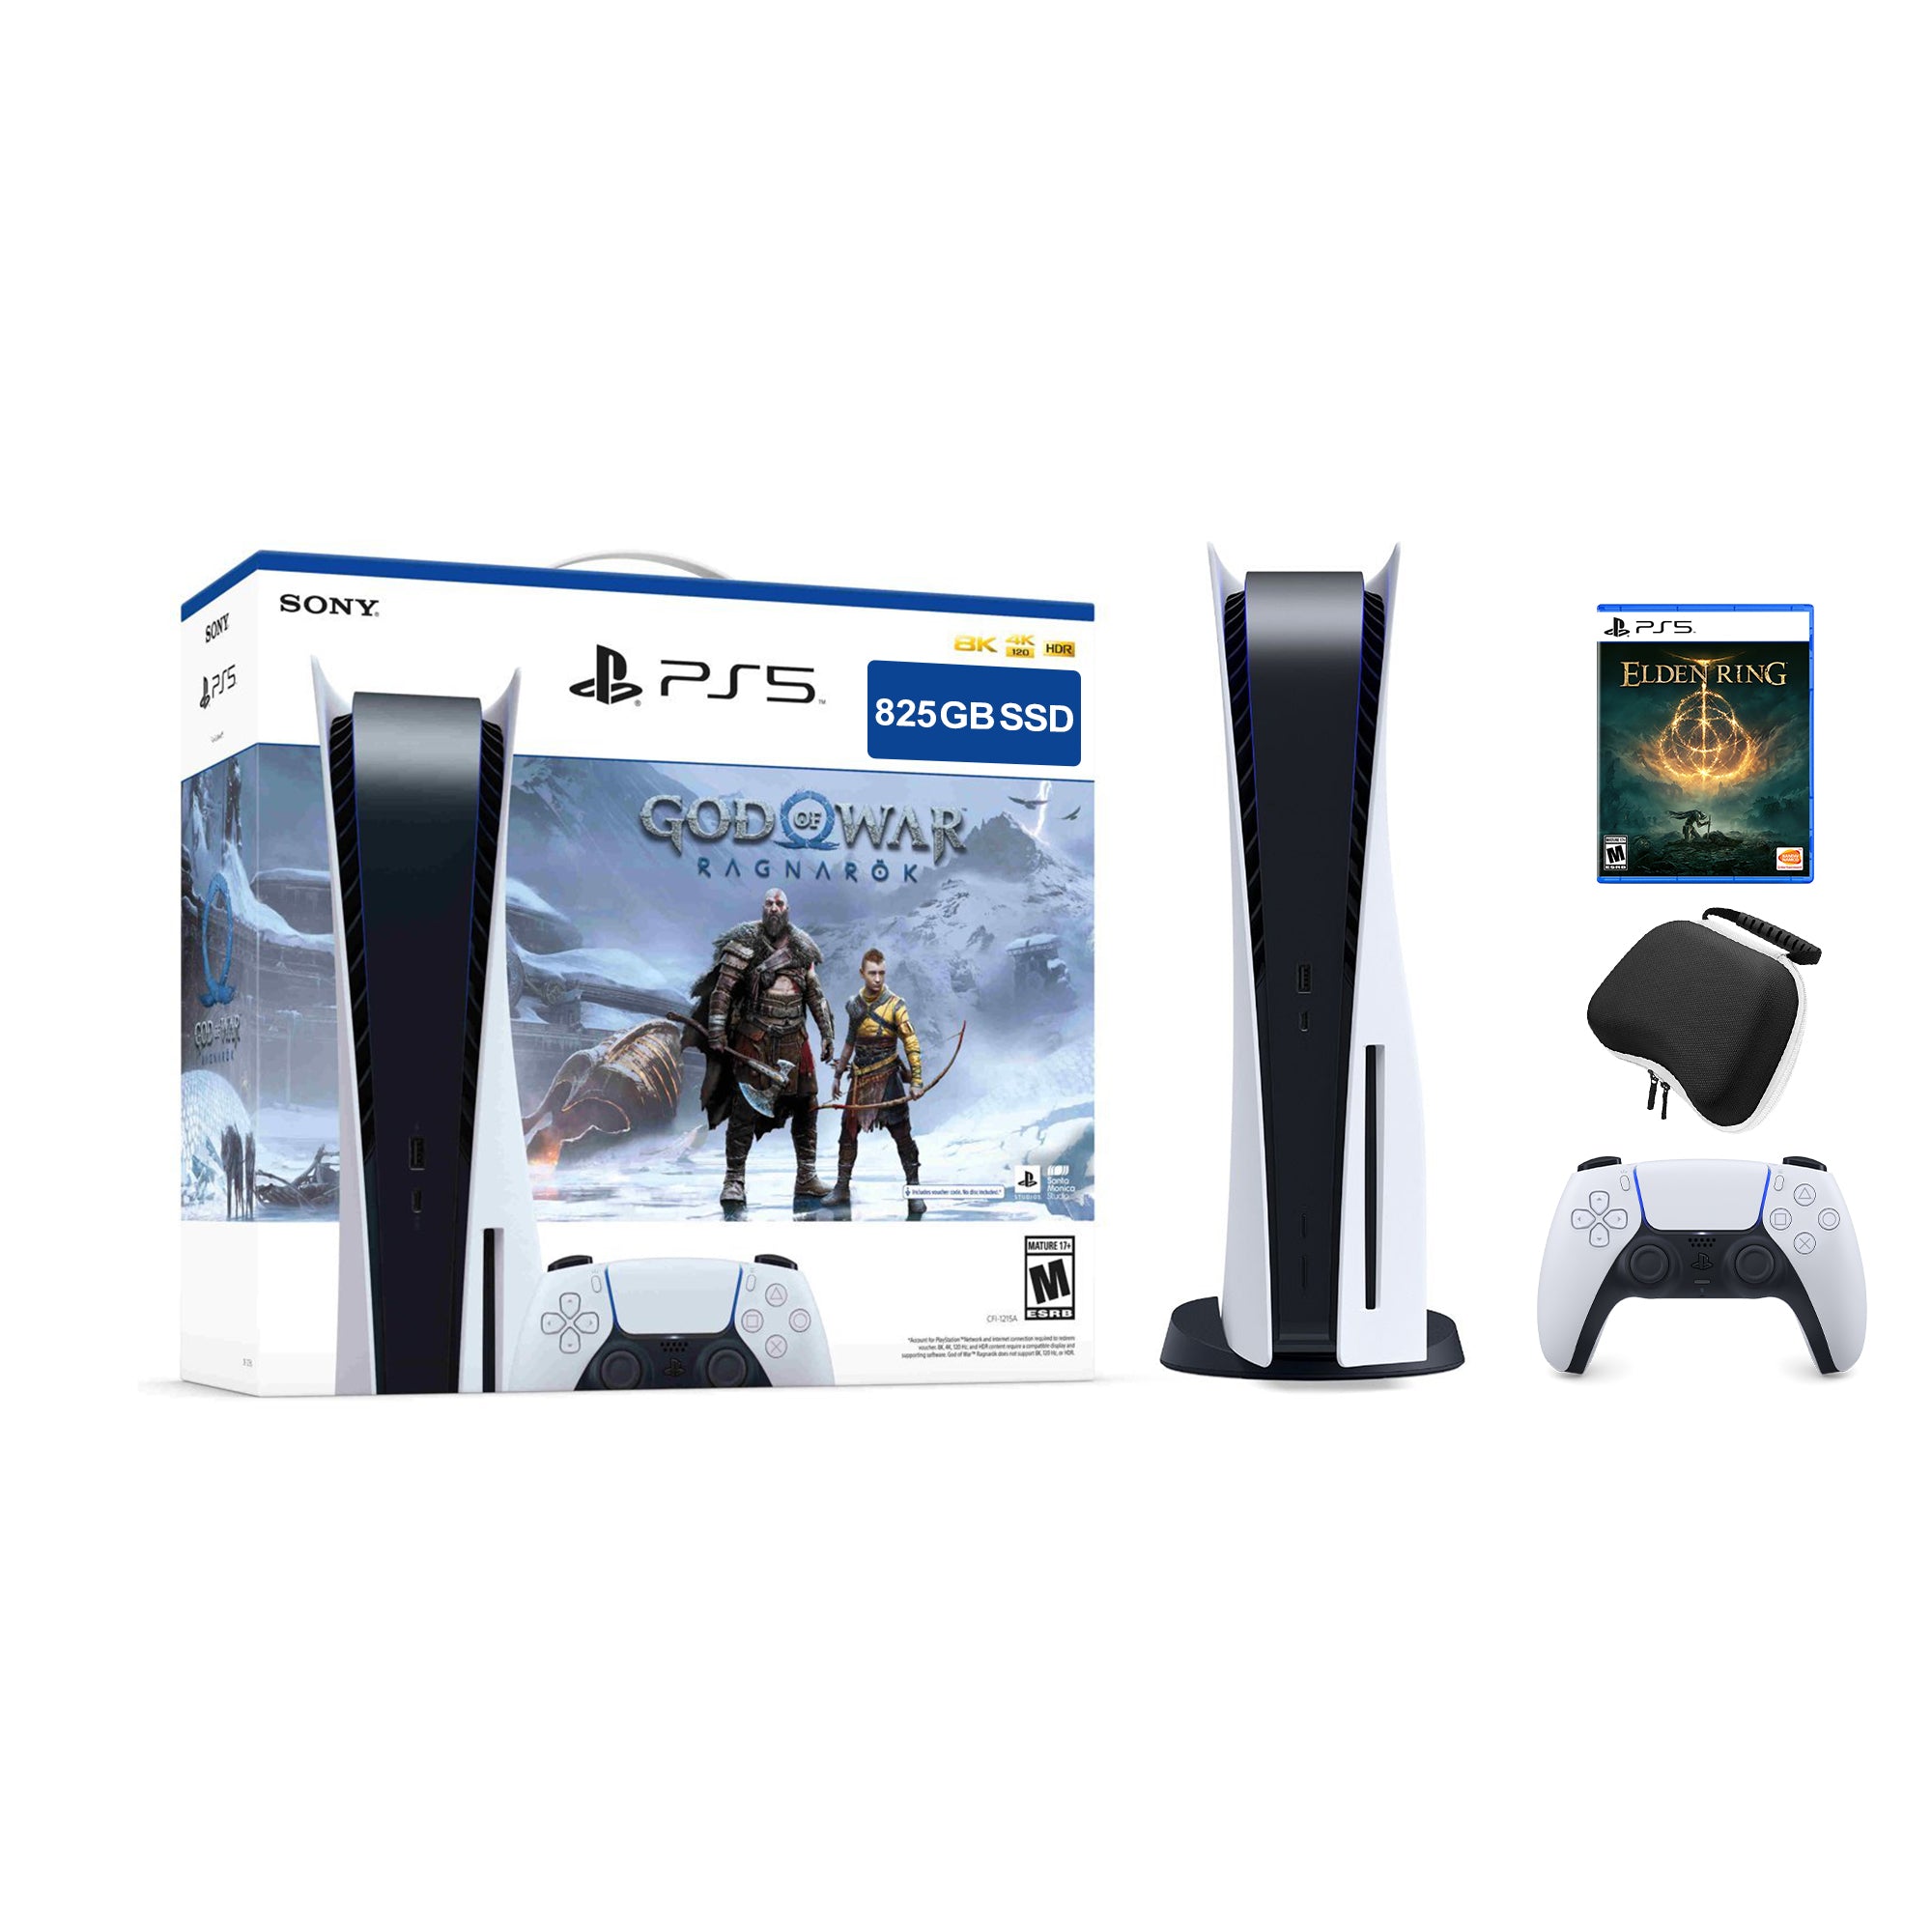 PlayStation 5 Disc Edition God of War Ragnarok Bundle with Elden Ring and Mytrix Controller Case